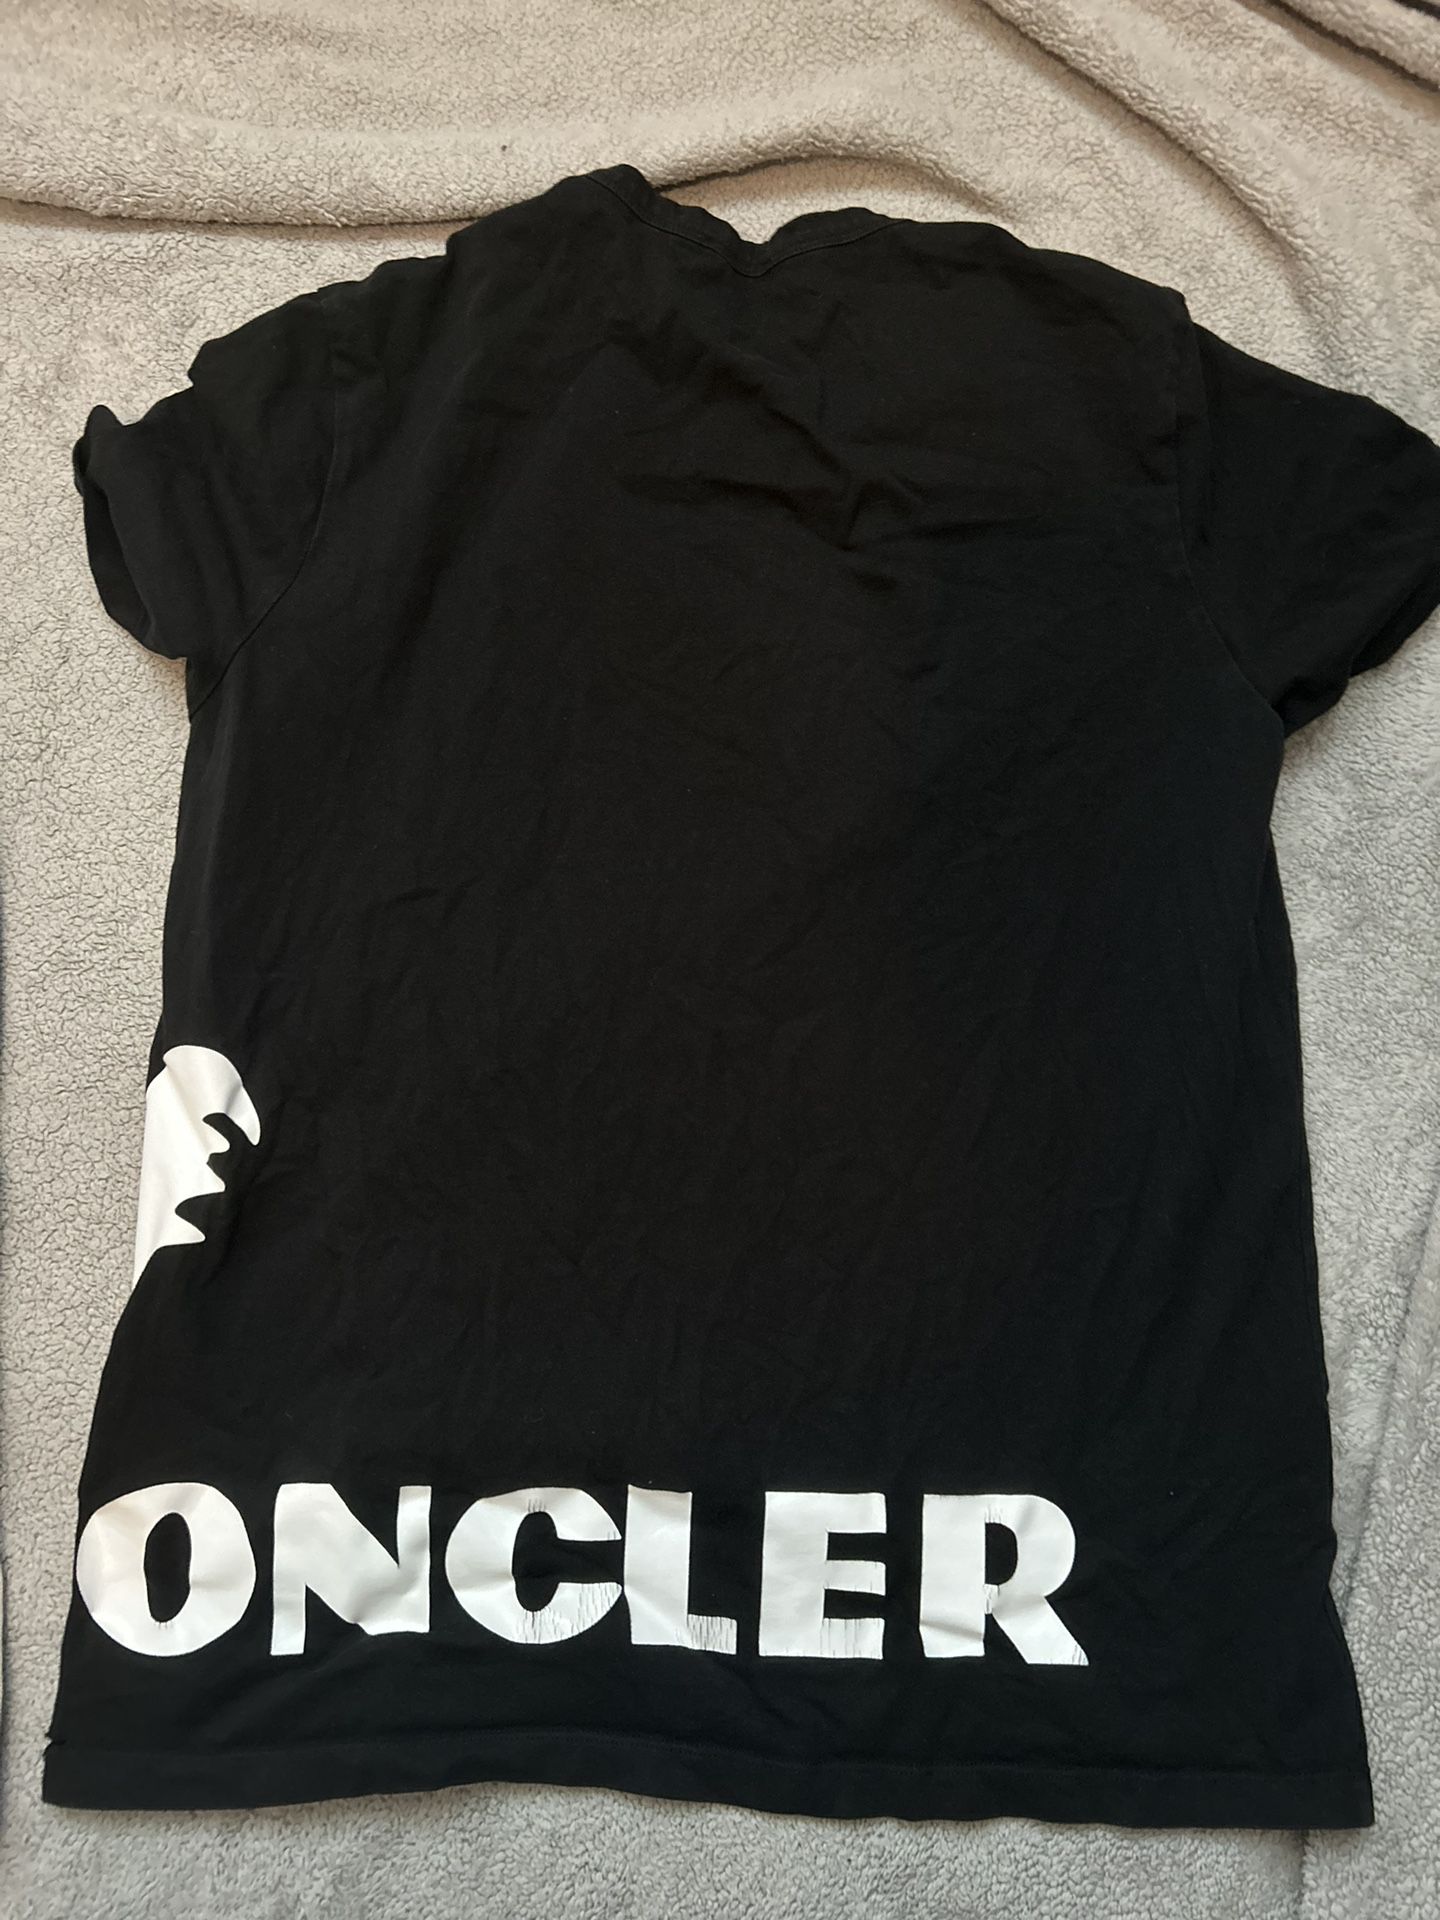 Moncler T Shirt 